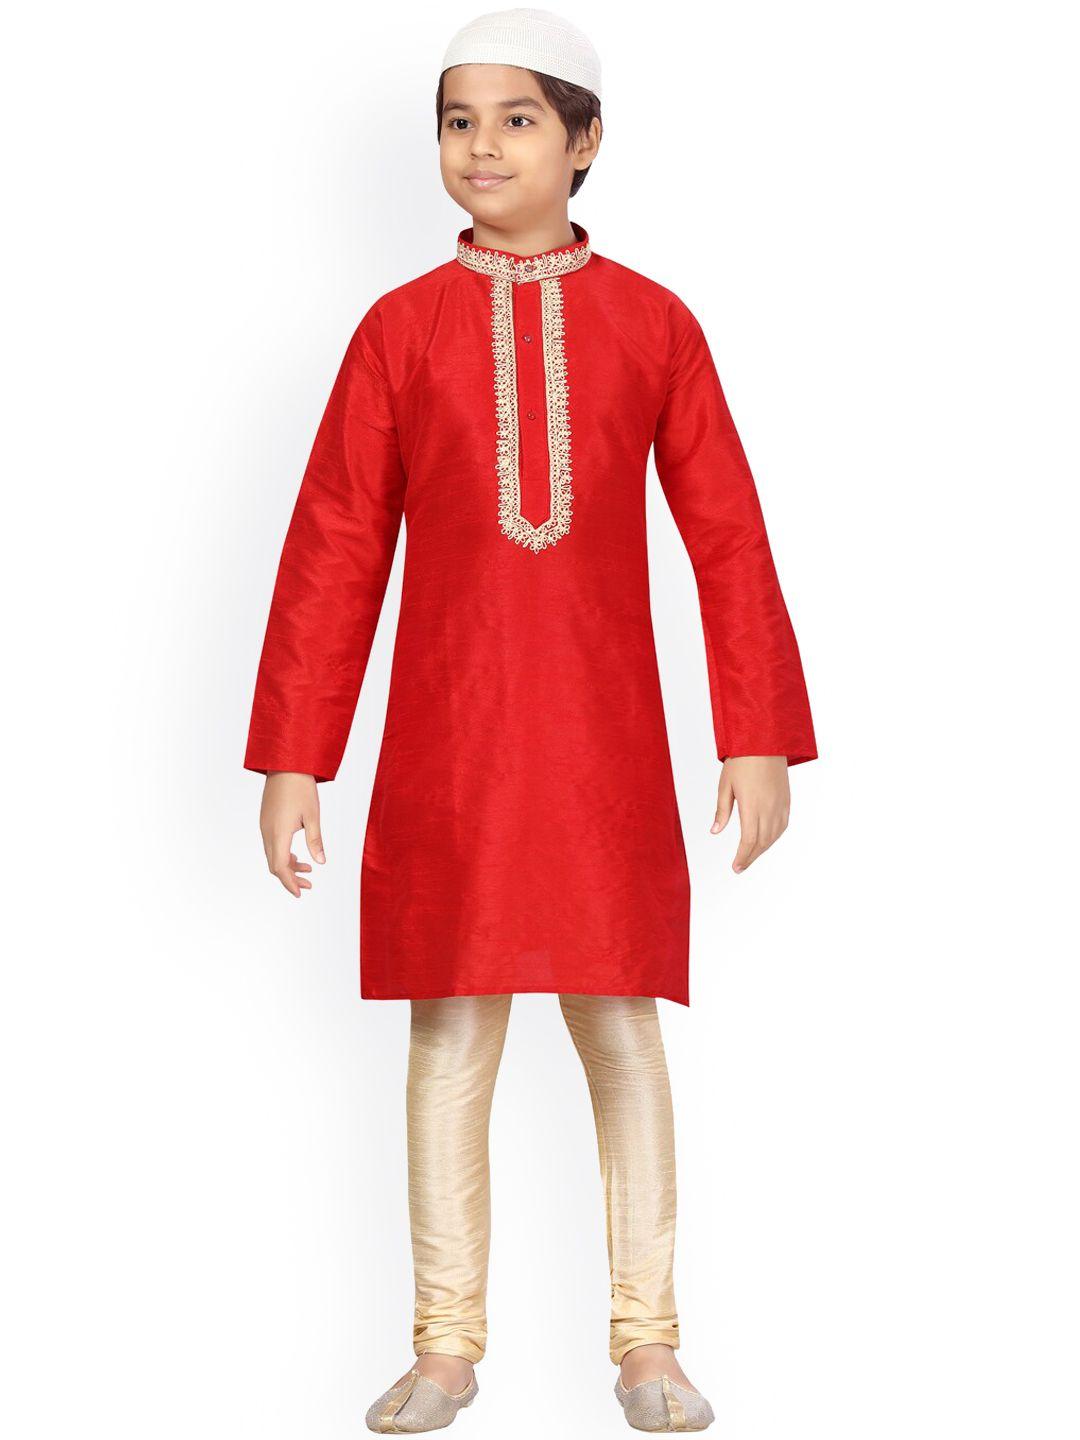 aarika boys red pure silk kurta with pyjamas